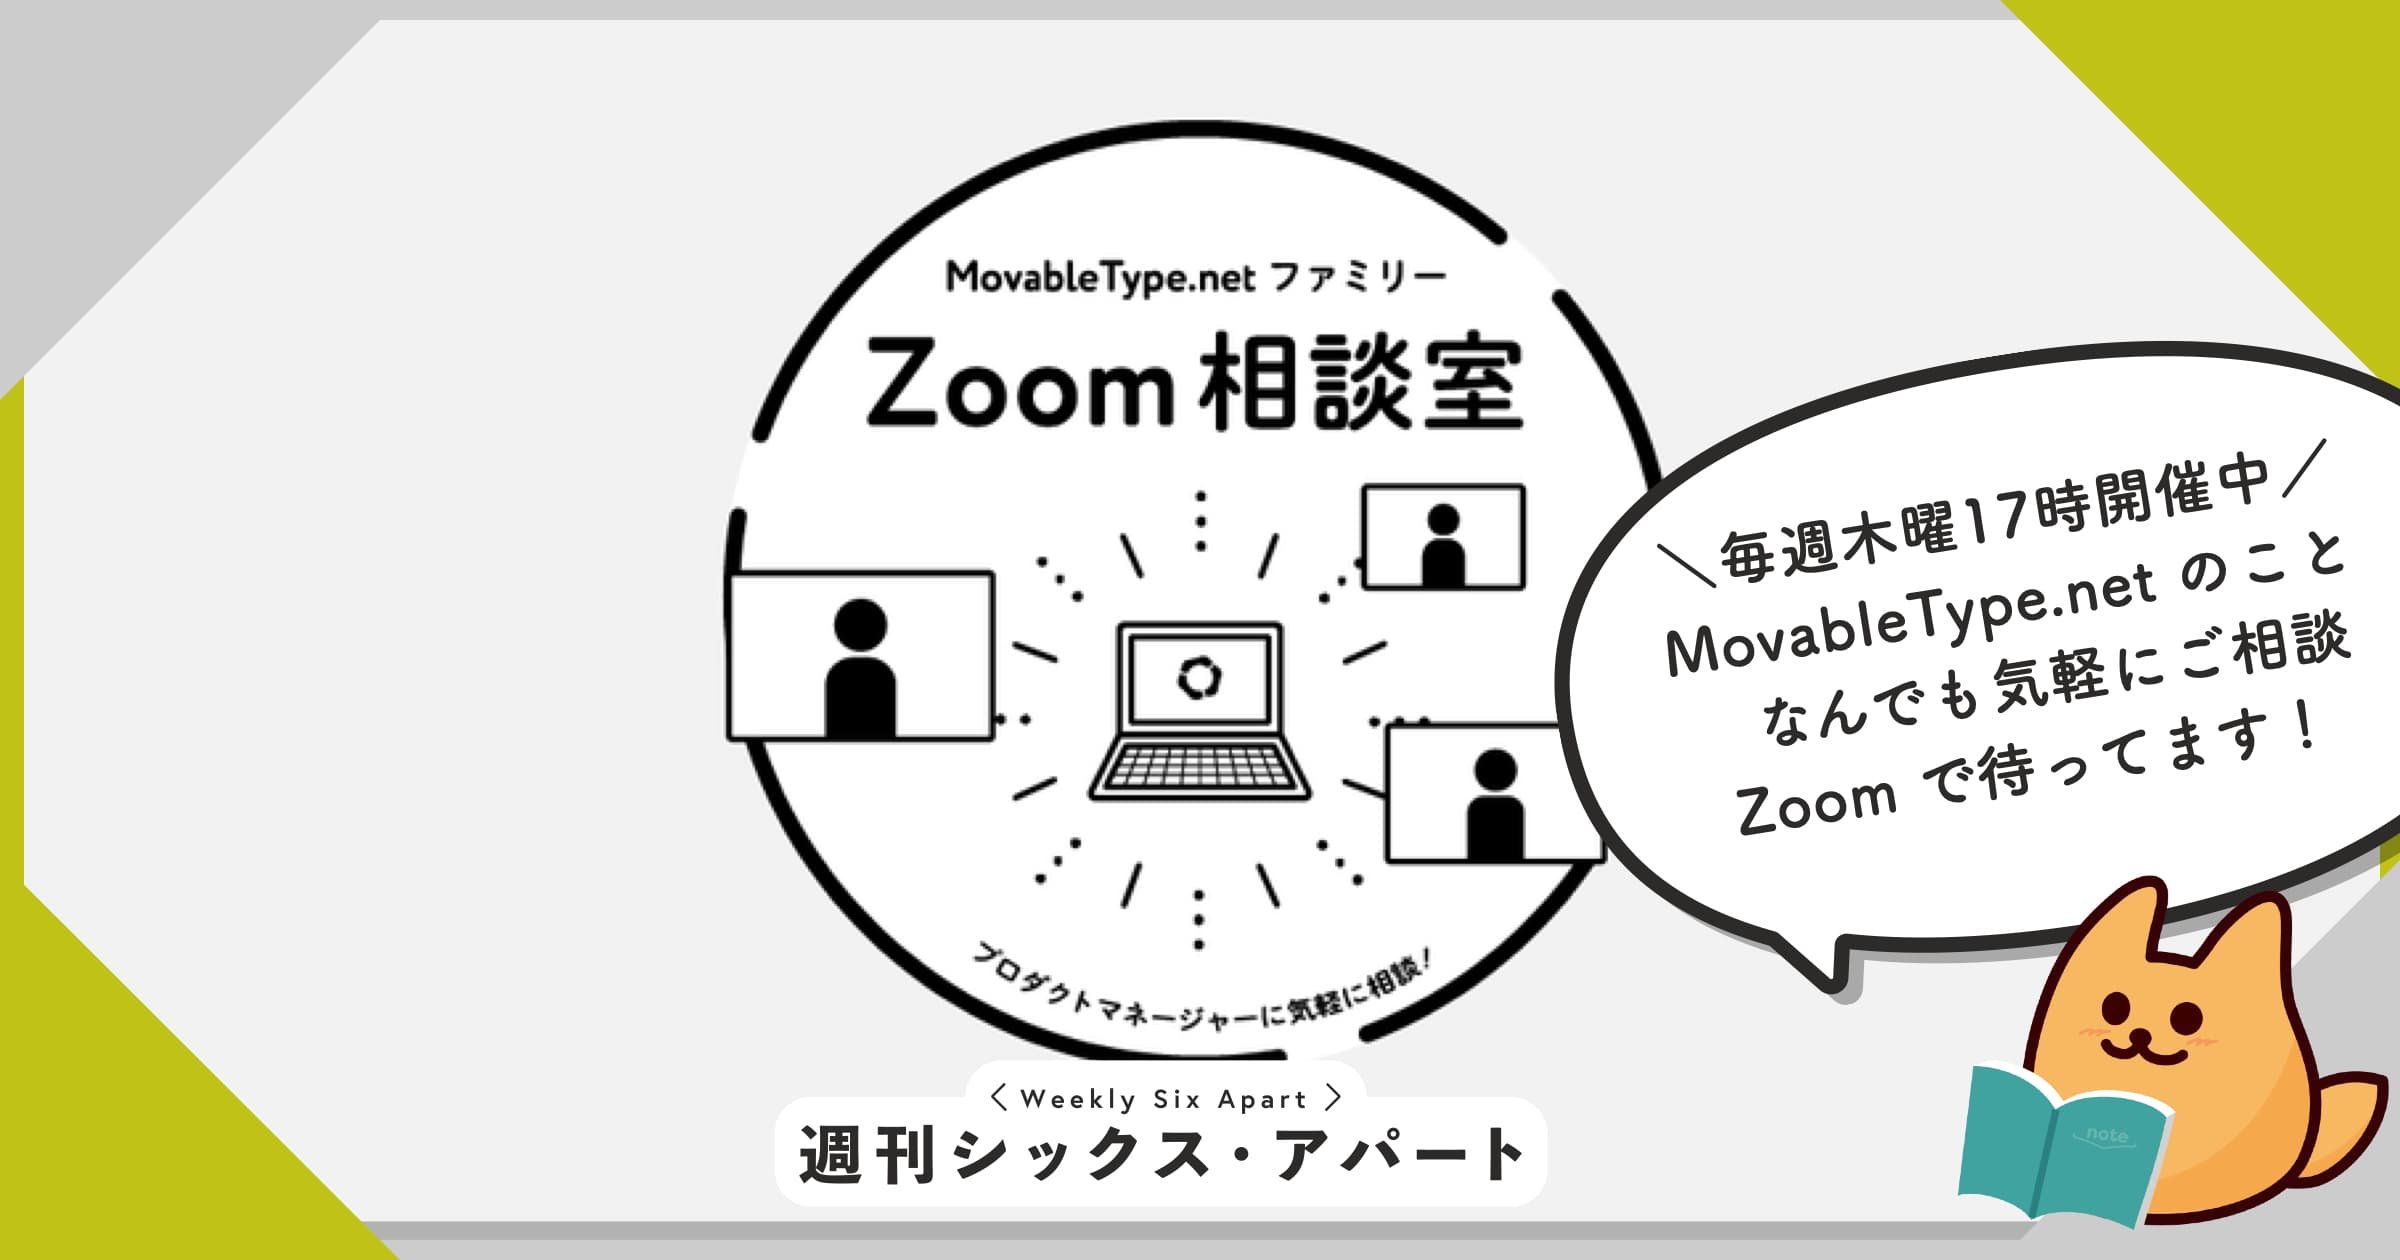 MovableType.net について何でも相談できる「Zoom 相談室」、本日17時もオープンします #週刊SA